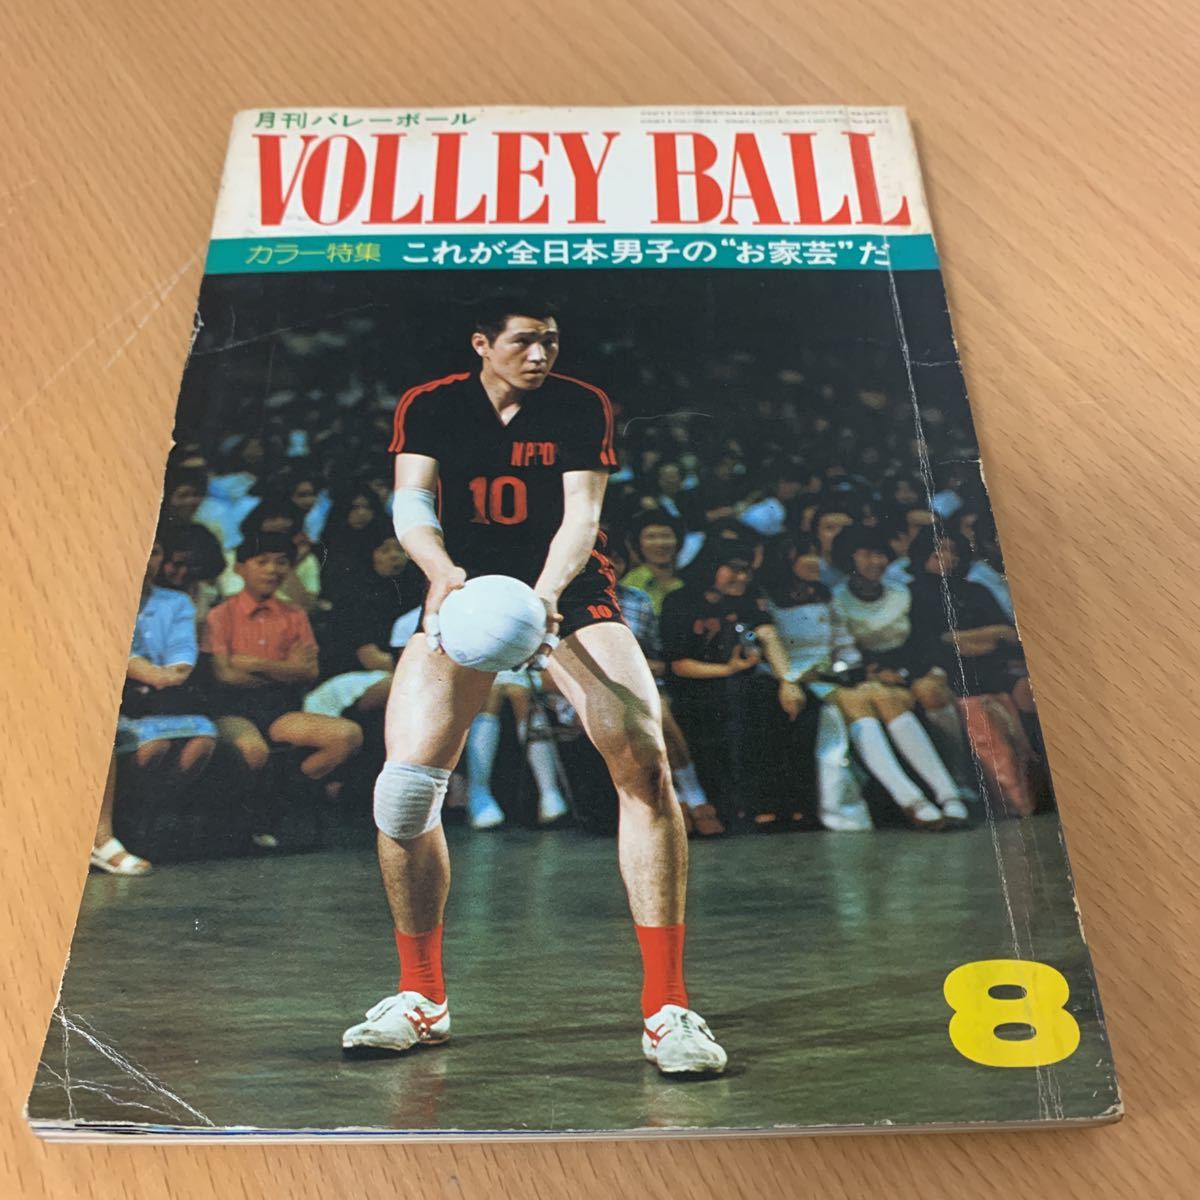  ежемесячный волейбол 1973 год 8 месяц номер 